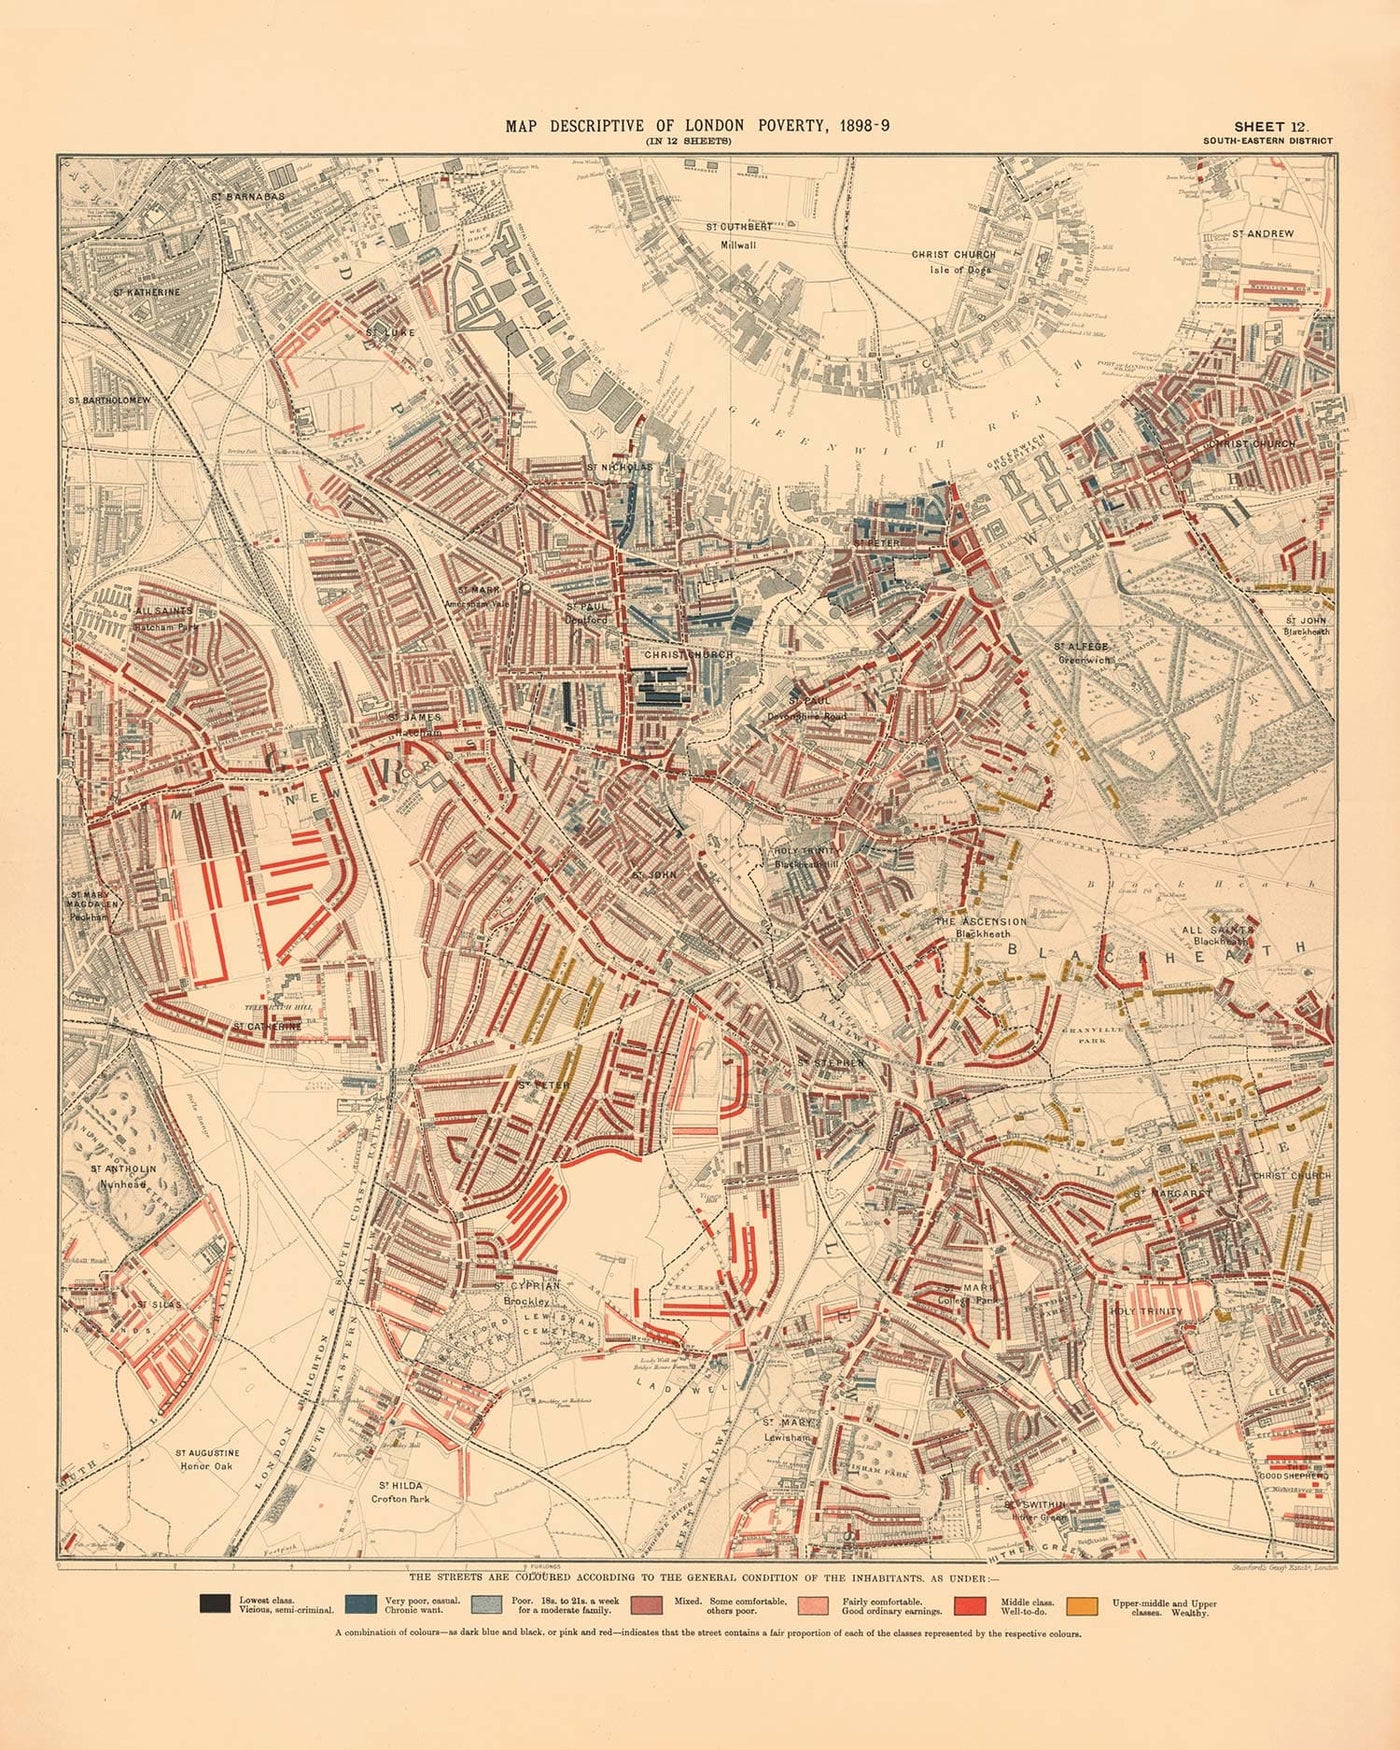 Carte de la pauvreté de Londres 1898-9, district sud-est, par Charles Booth - New Cross, Blackheath, Nunhead, Deptford - SE8, SE10, SE14, SE4, SE13